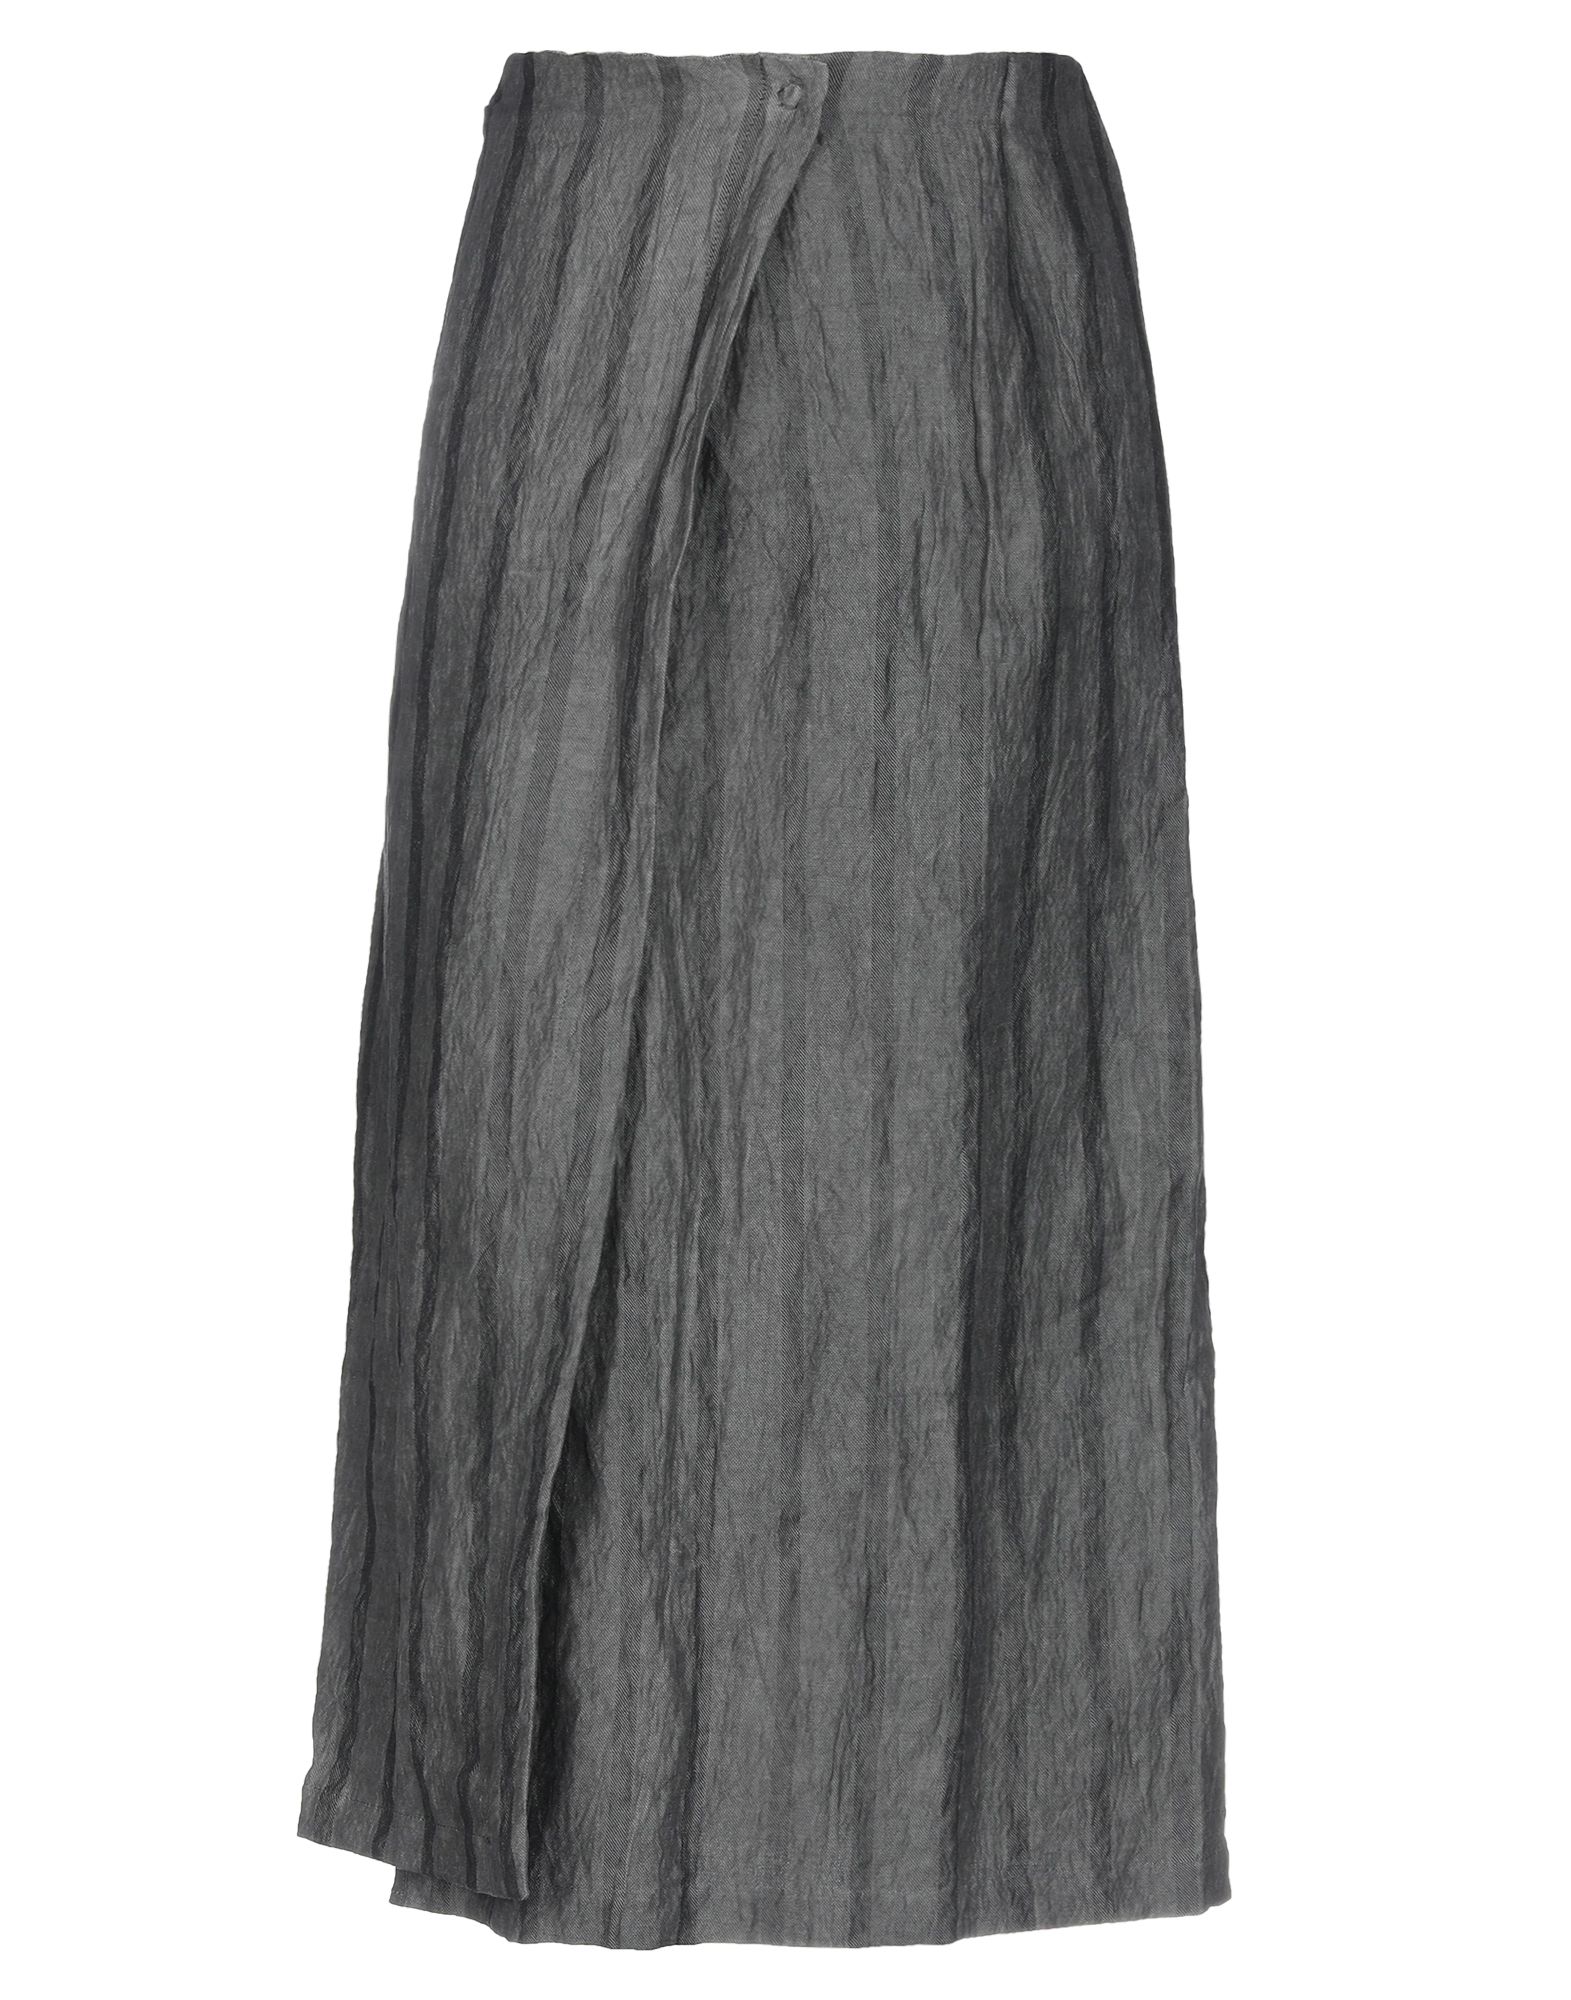 Длинная юбка  - Серый цвет